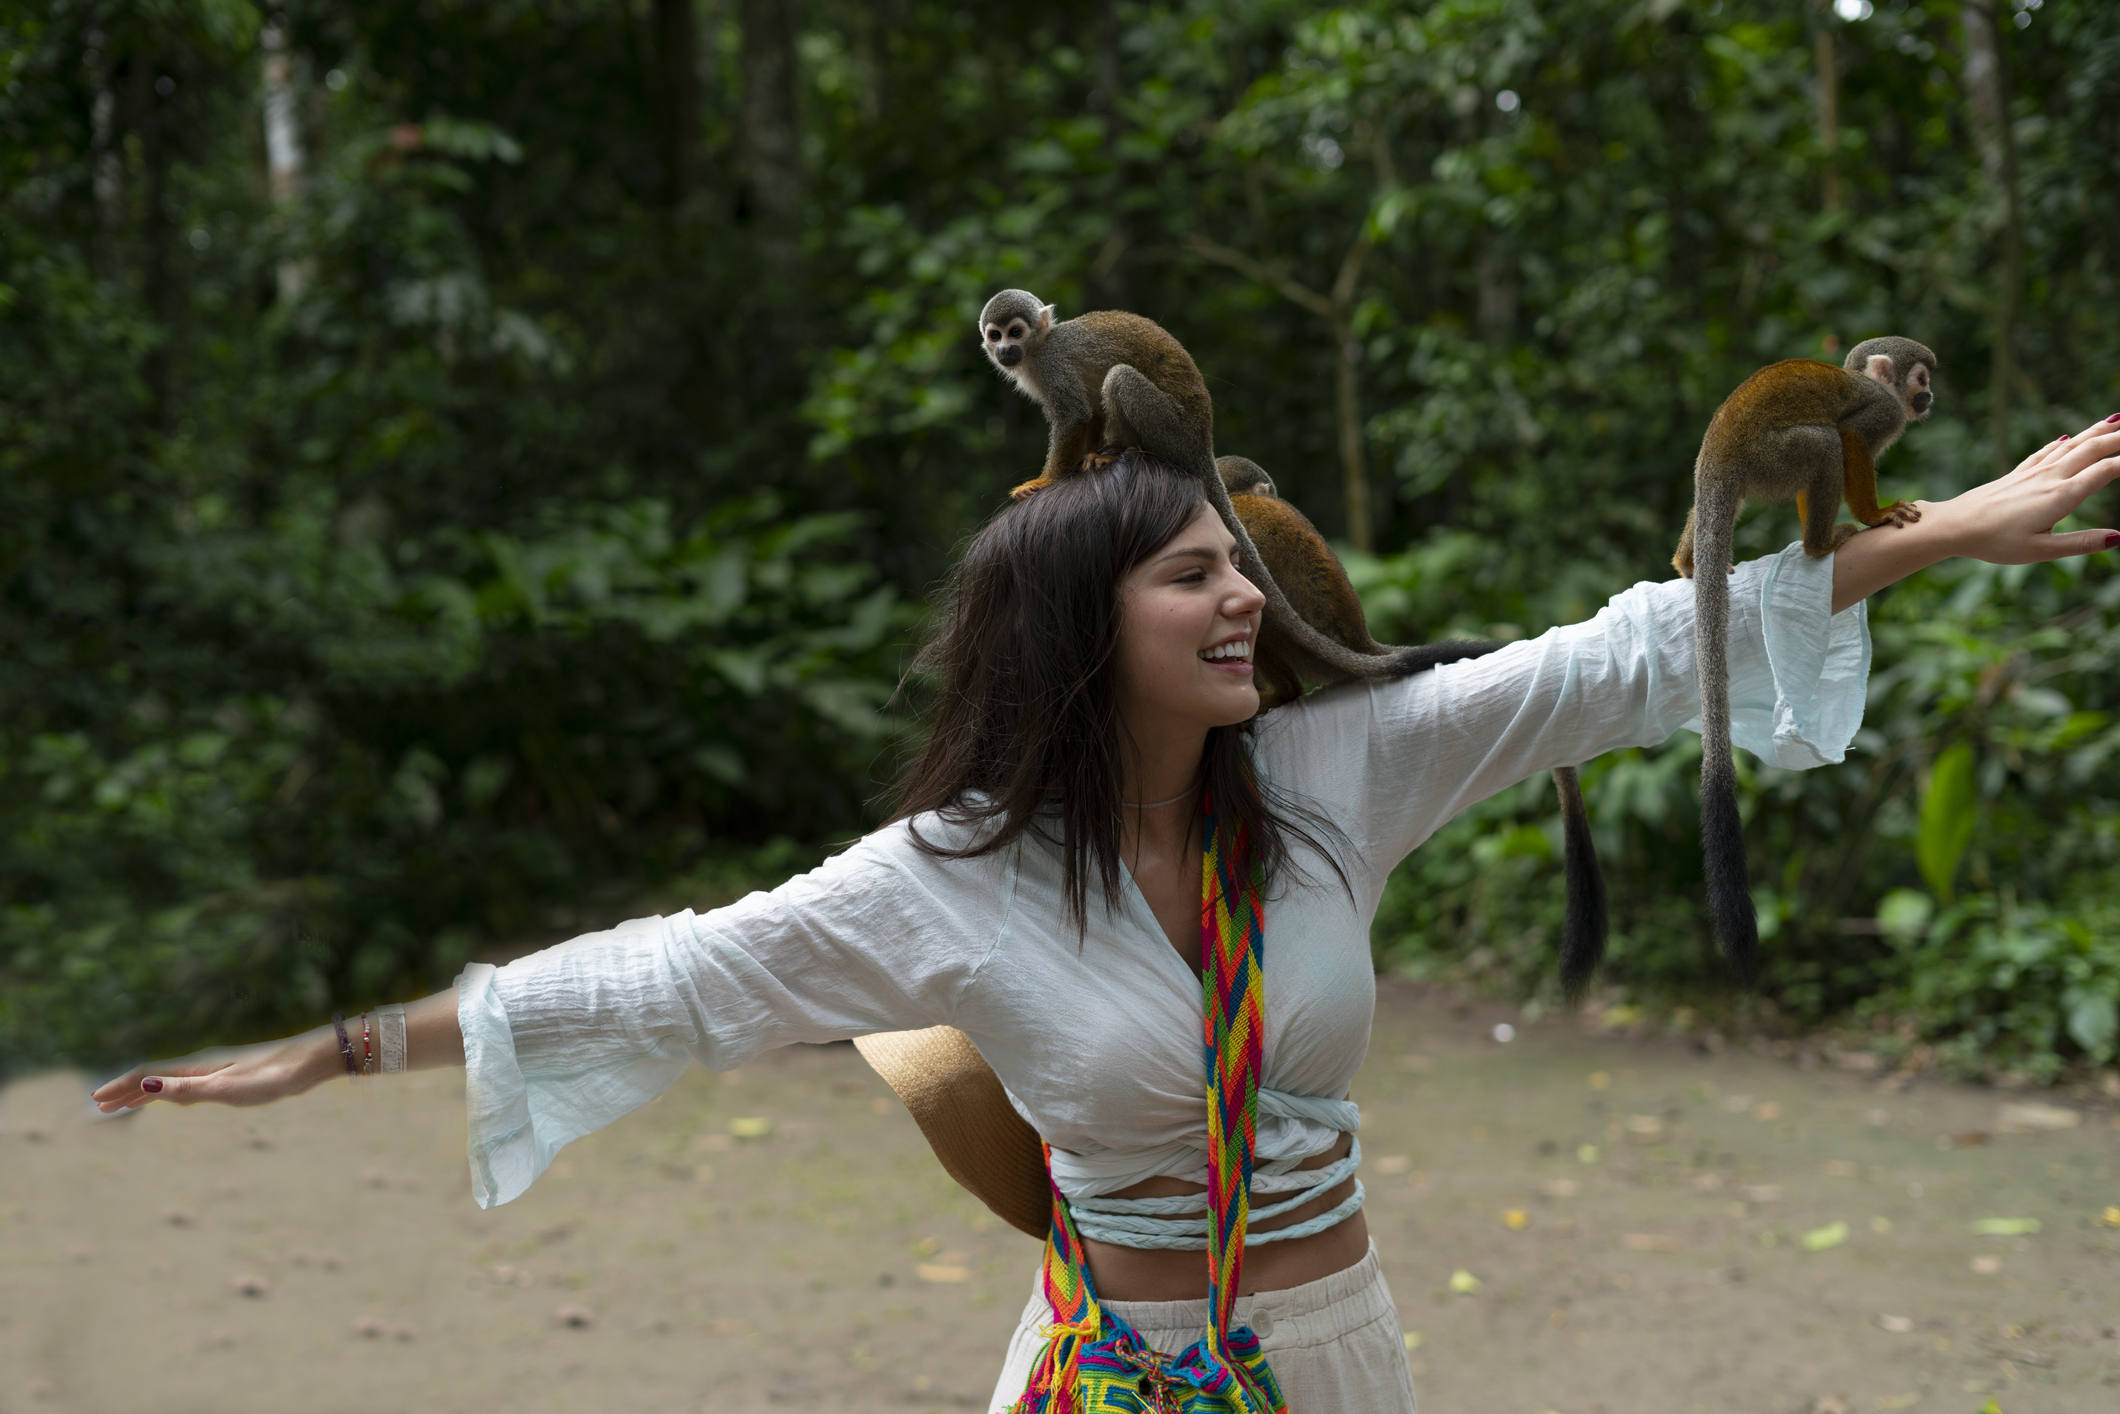 Mulher brinca com macacos em destino que viajou. Isso porque a sua vacina da febre amarela estava dentro da validade